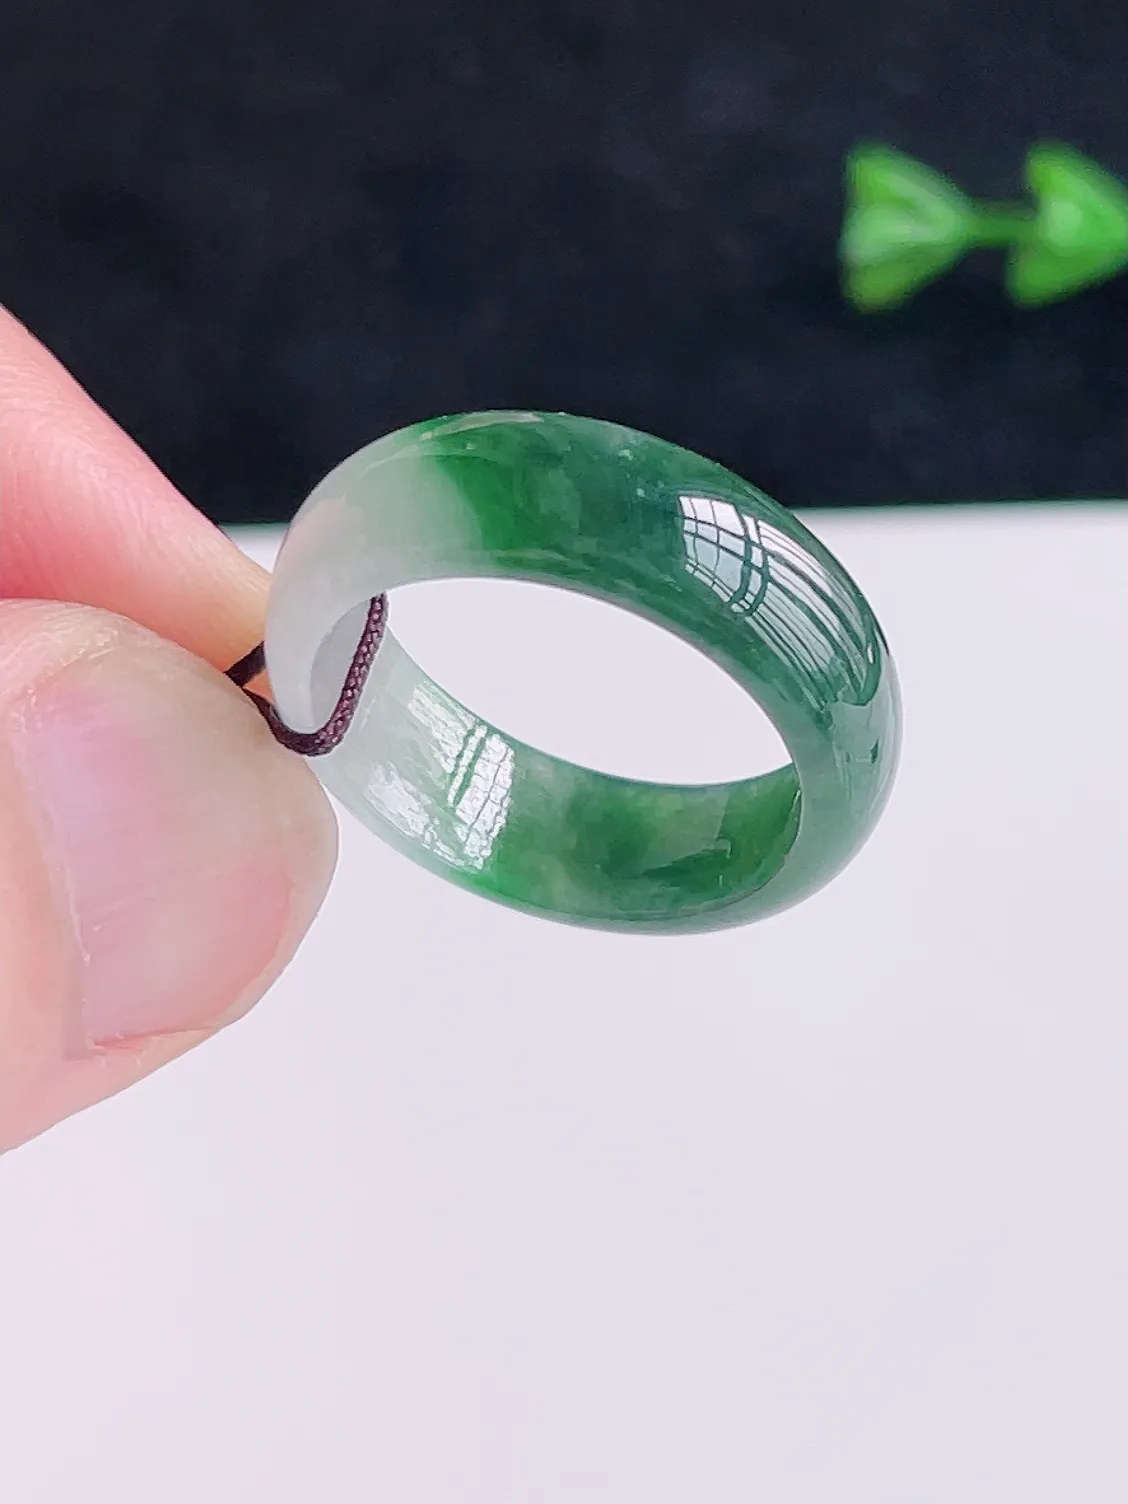 A货翡翠冰润绿色翡翠戒指  颜色清新 半山半水 艳丽漂亮，佩戴优雅大方，AK0110   （请在自然光欣赏）尺寸18.5-6.8-2.8mm  18号